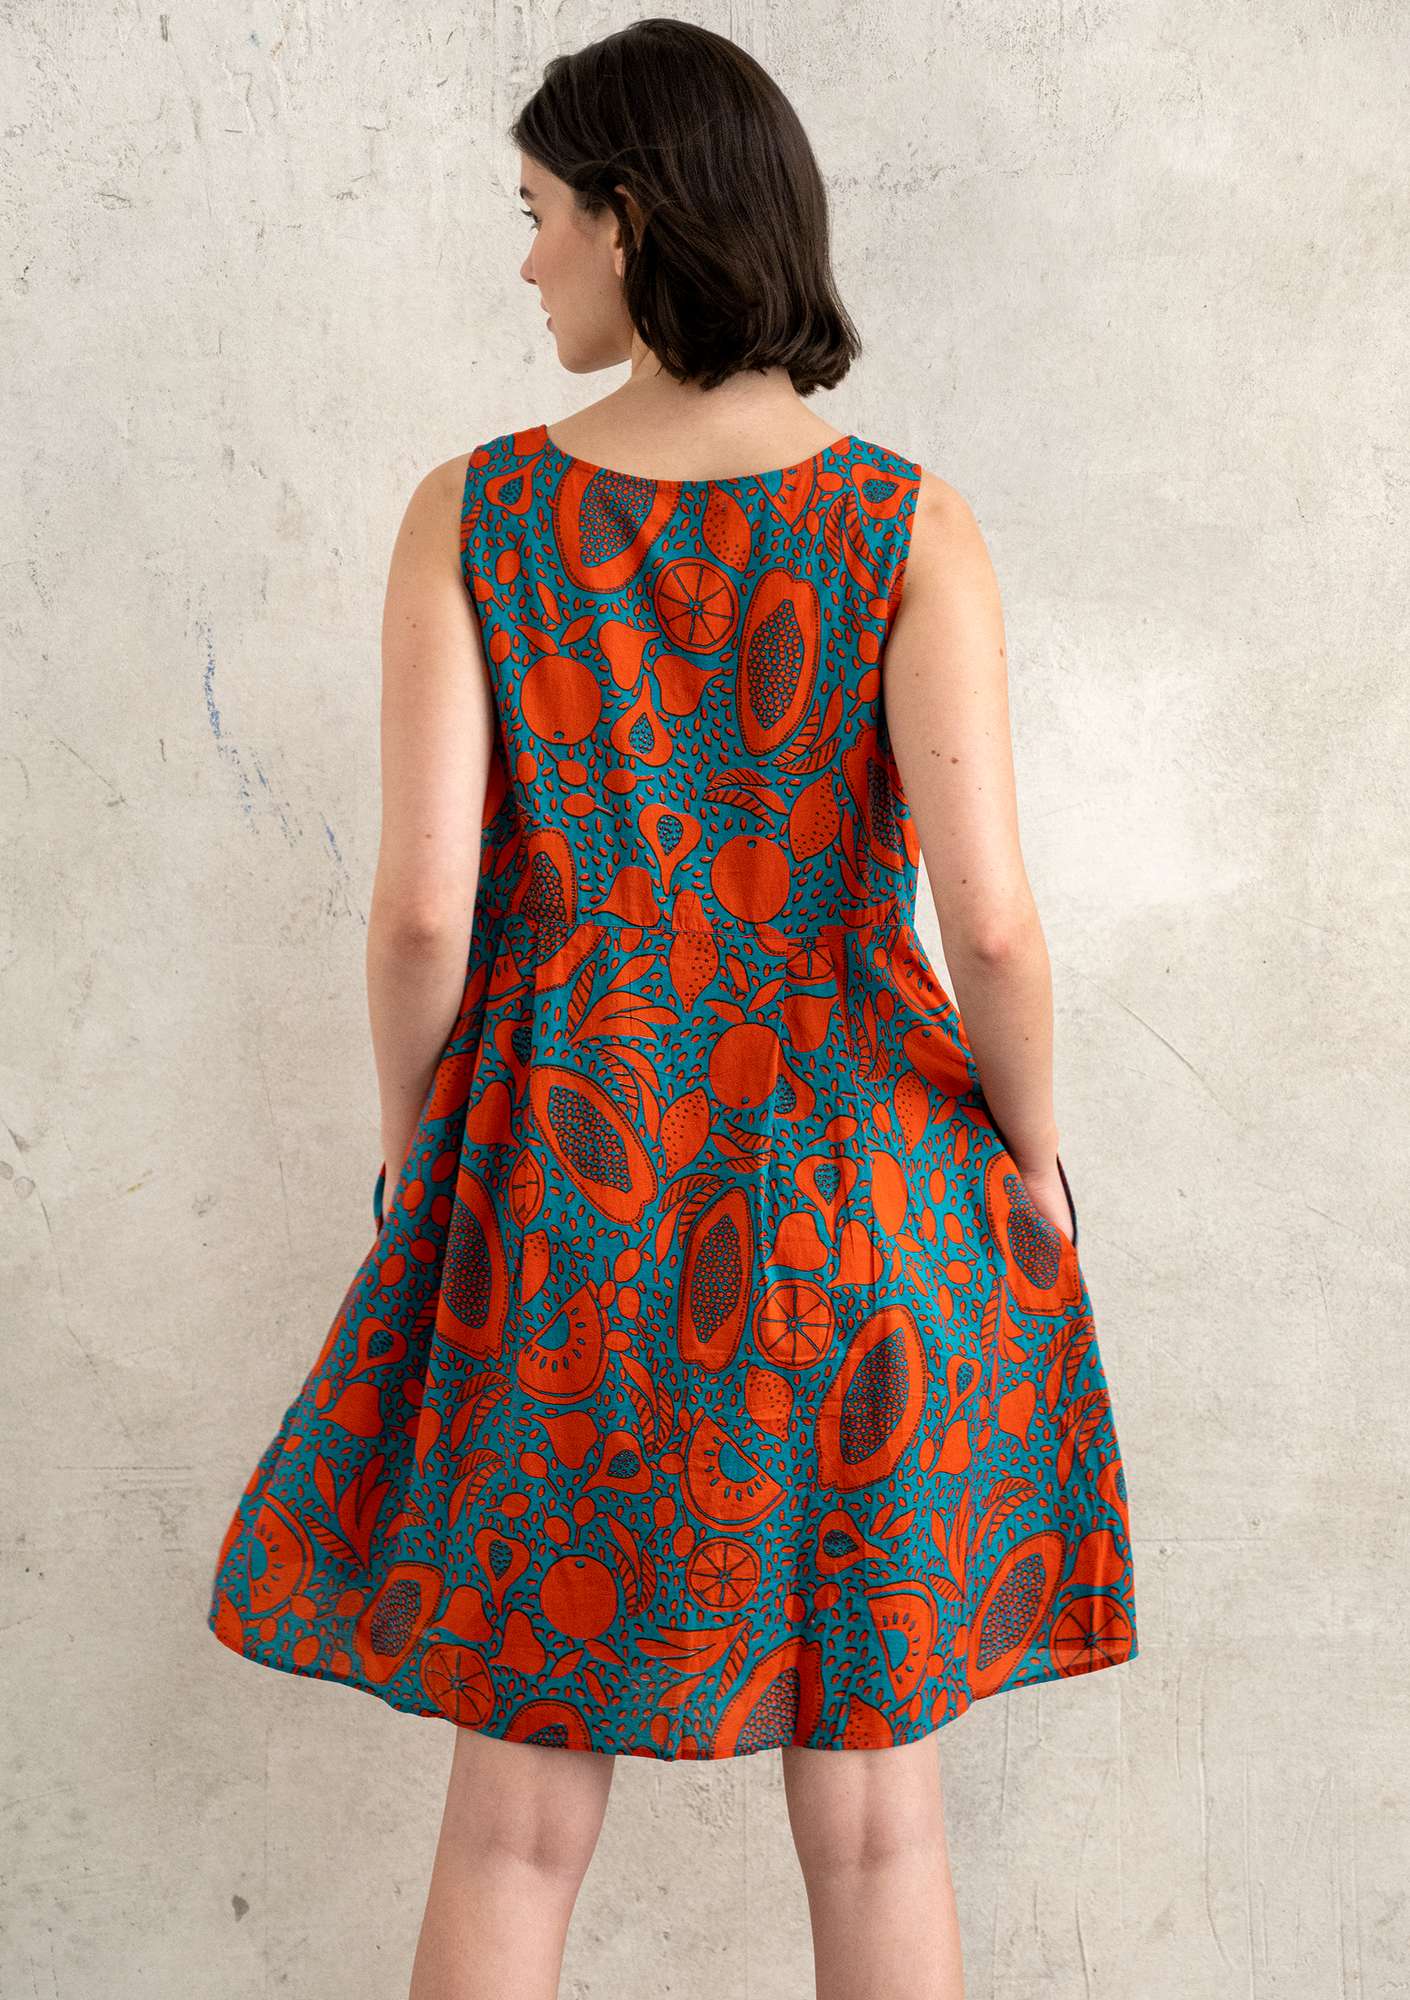 Vevd kjole «Marimba» i økologisk bomull lavarød